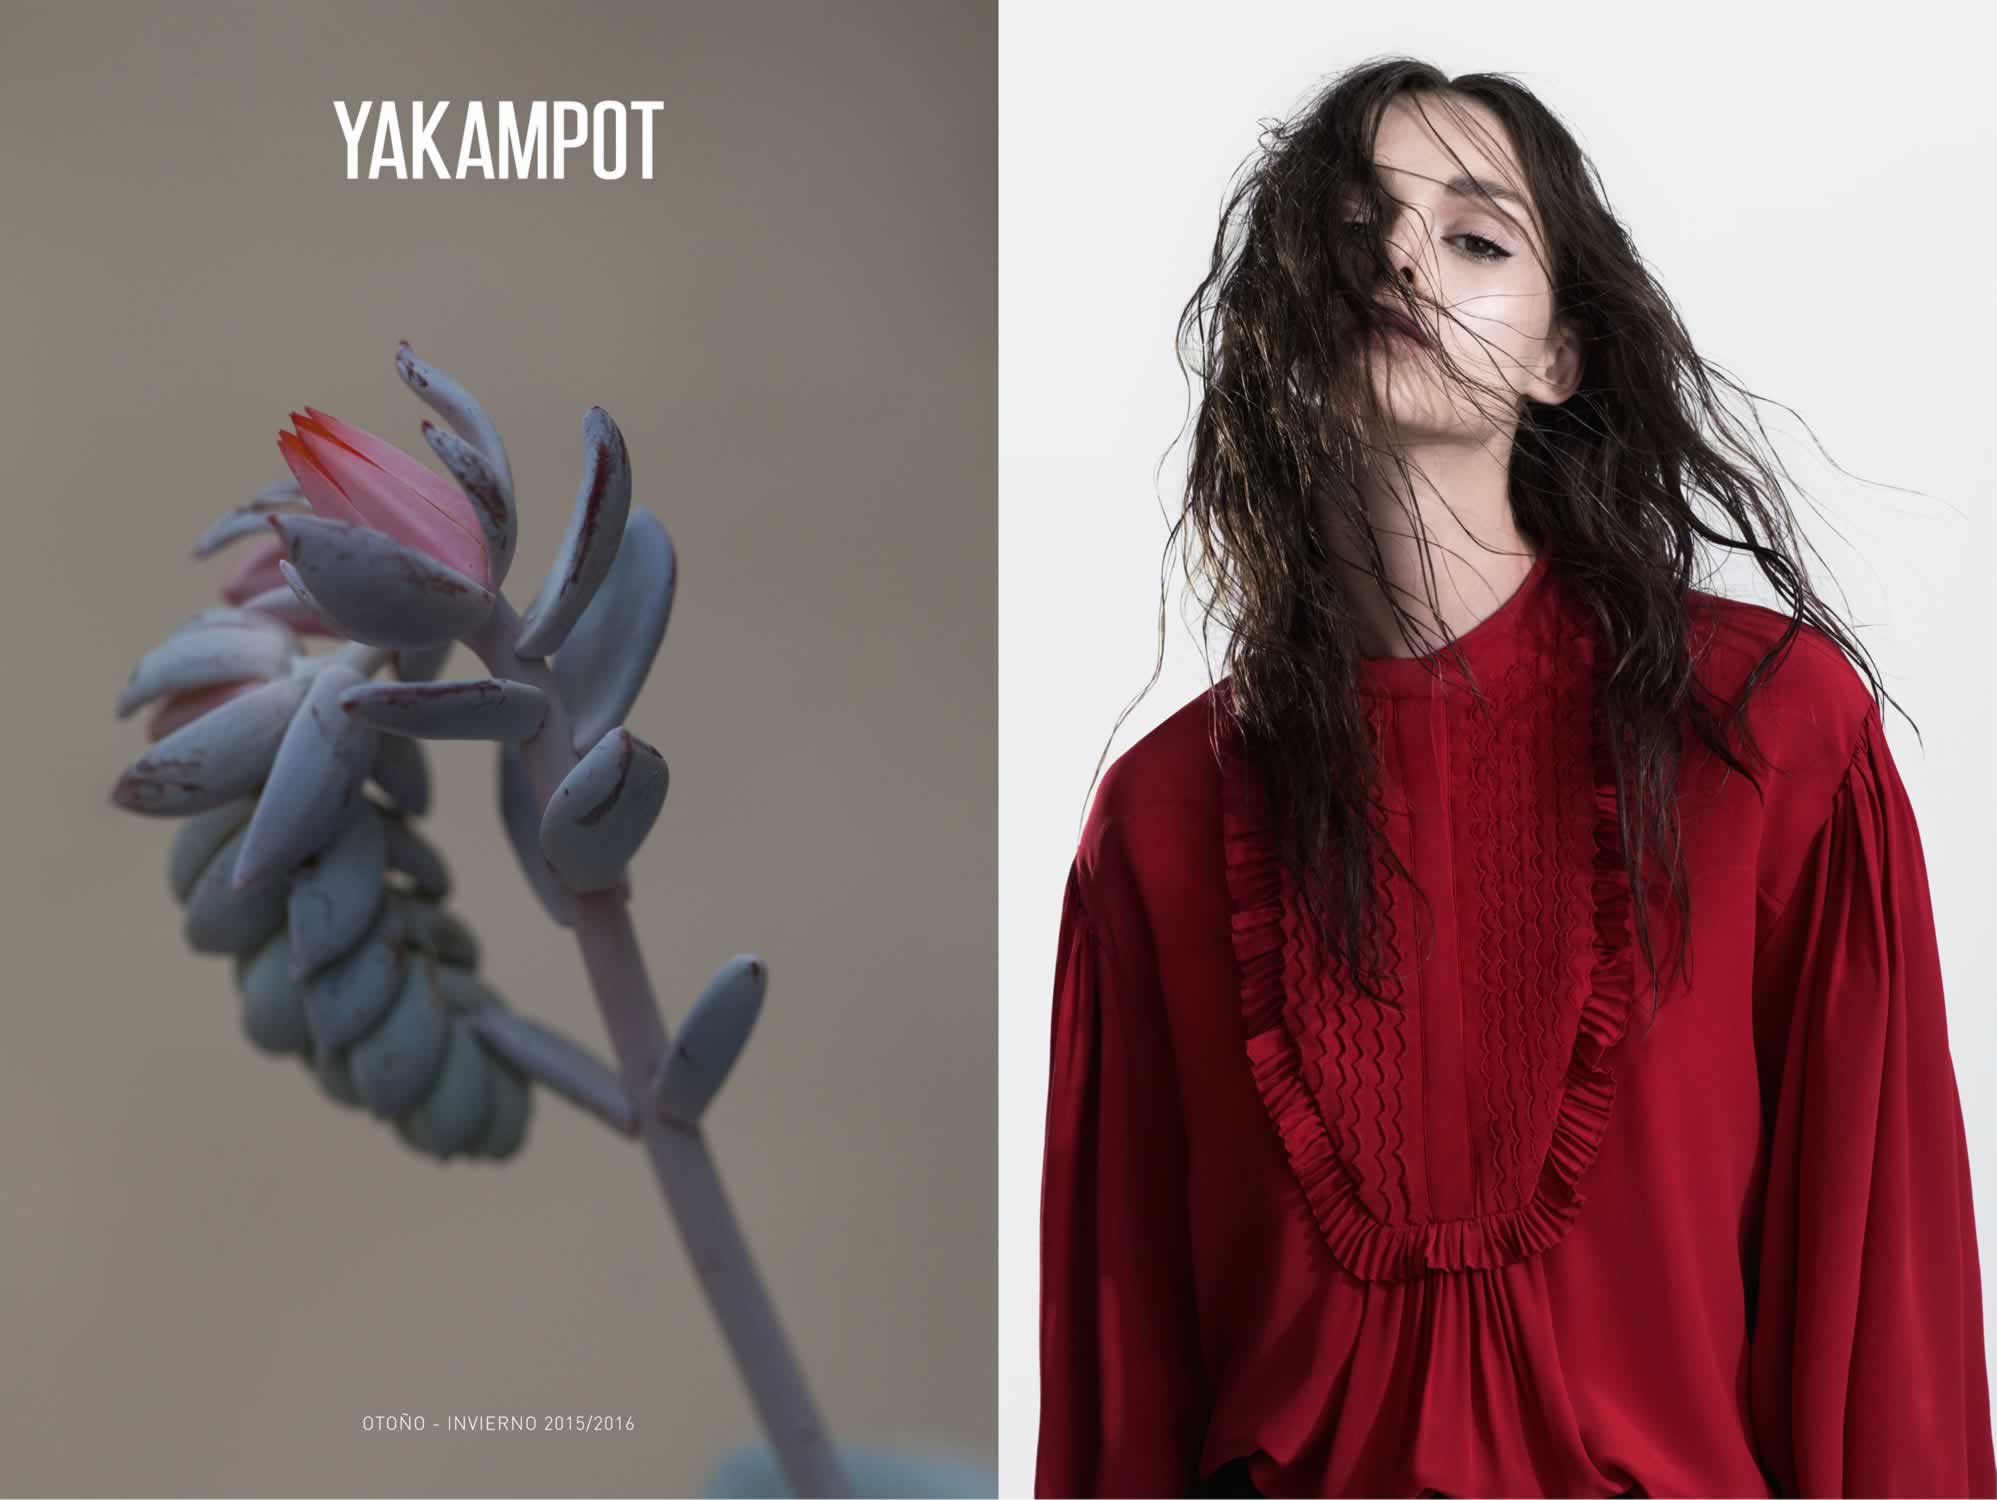 prendas-invierno-2015 Yakampot